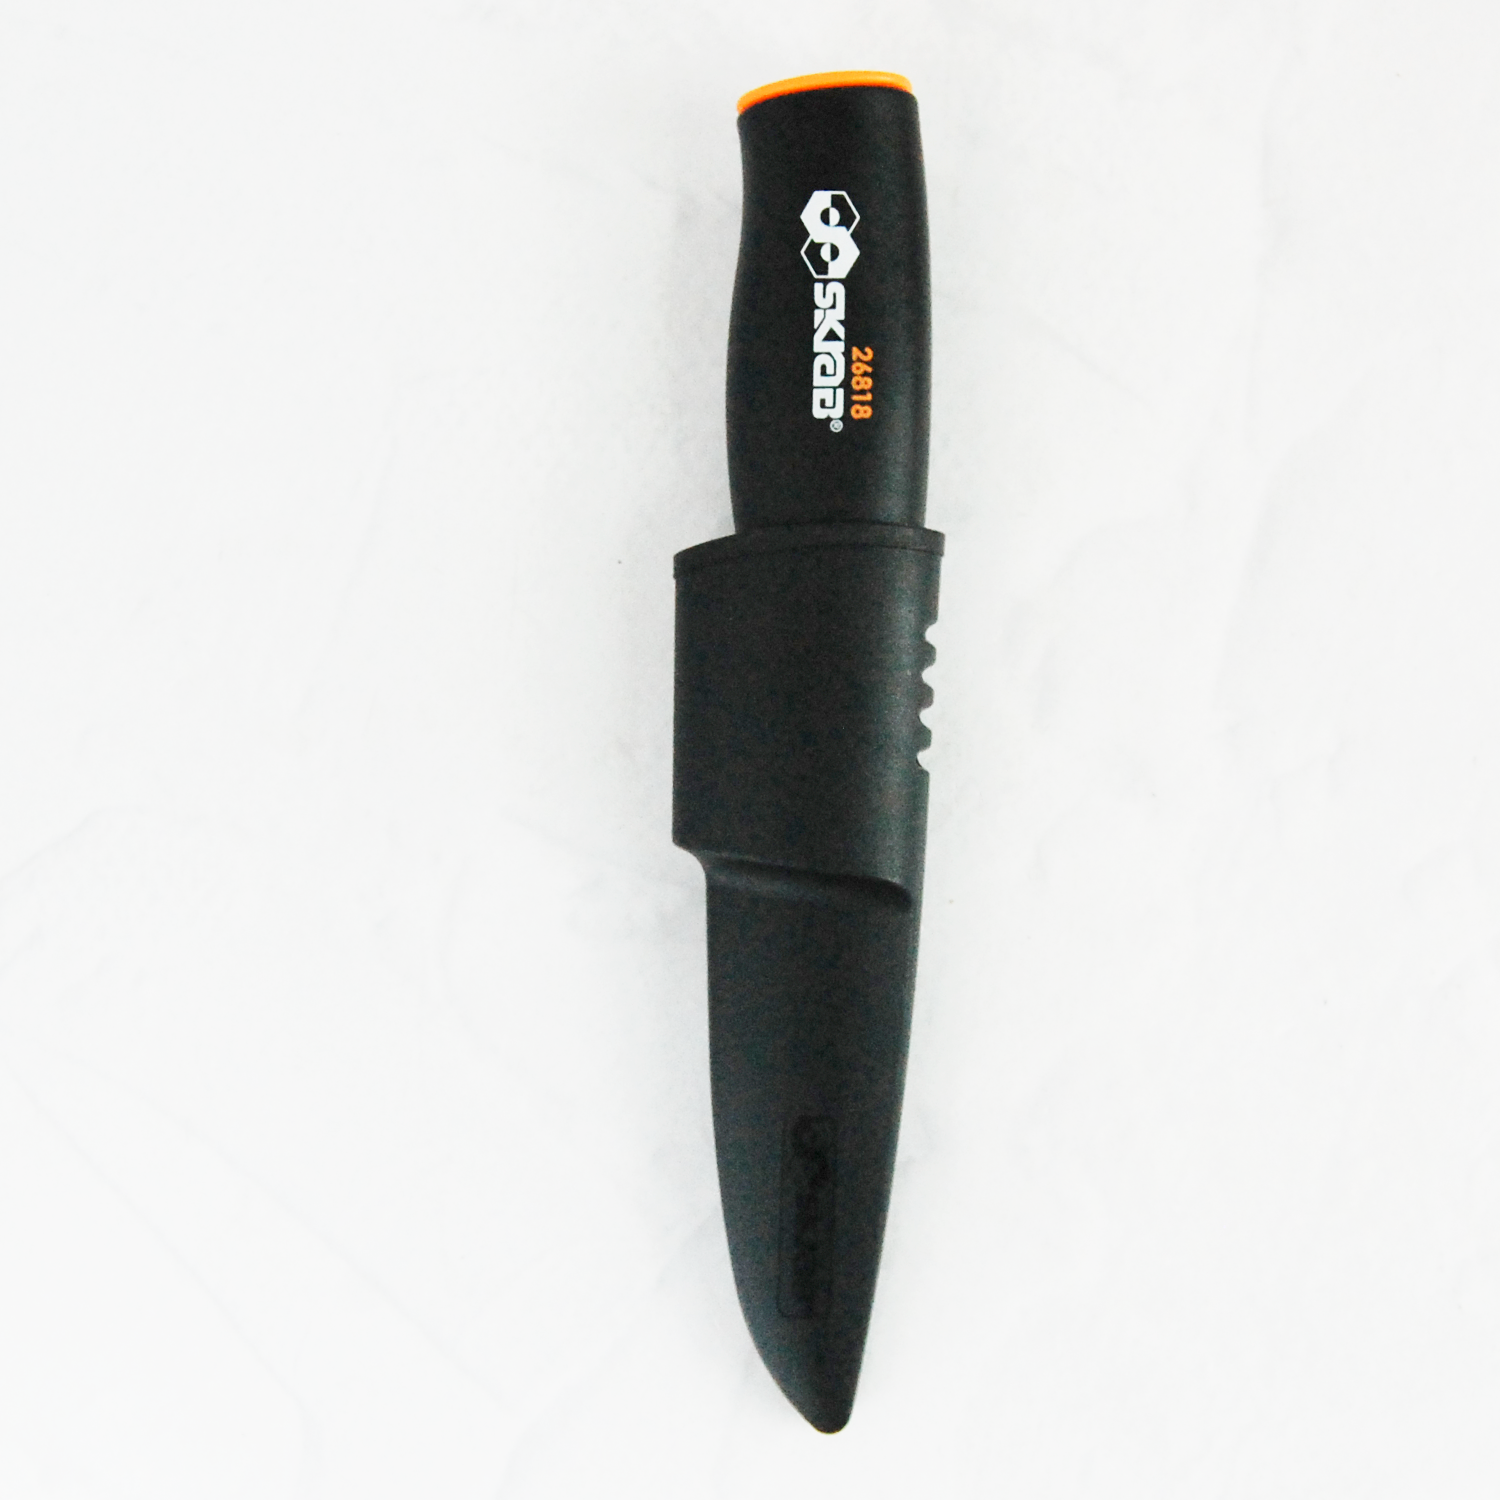 Нож с ножнами универсальный 225 мм SKRAB 26818